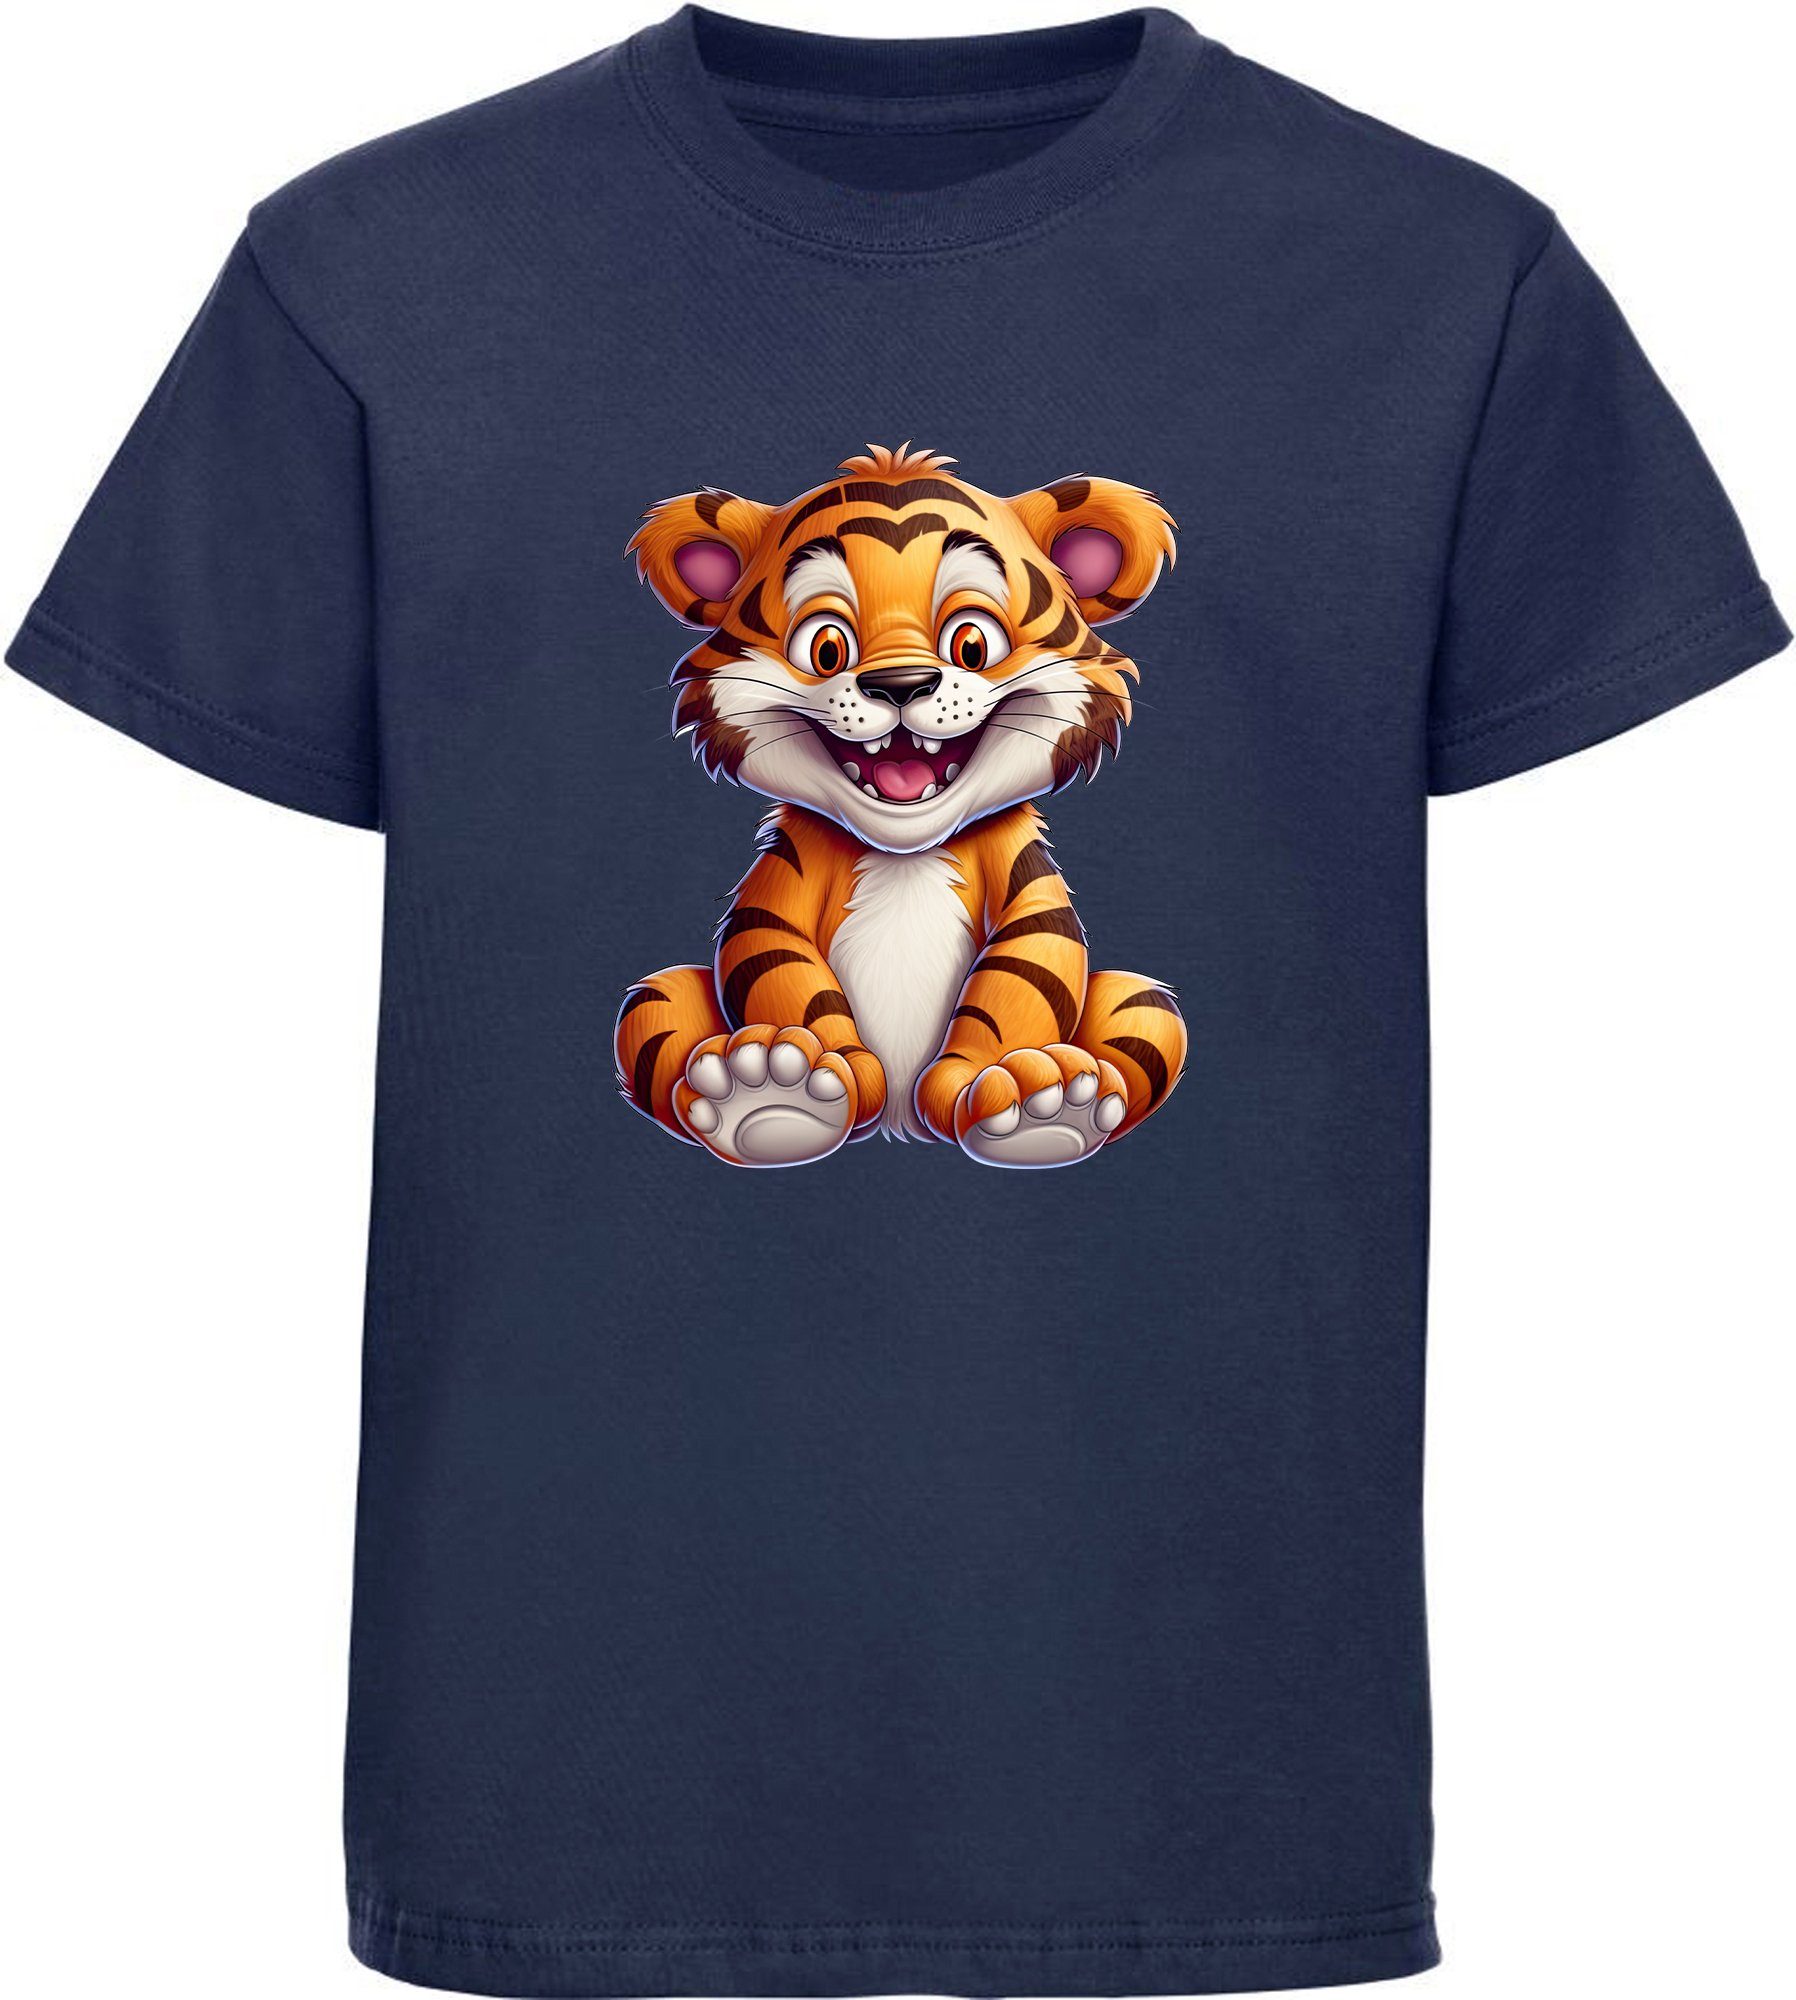 MyDesign24 T-Shirt i278 Aufdruck, mit Print blau Kinder Baby navy - Baumwollshirt Tiger bedruckt Wildtier Shirt